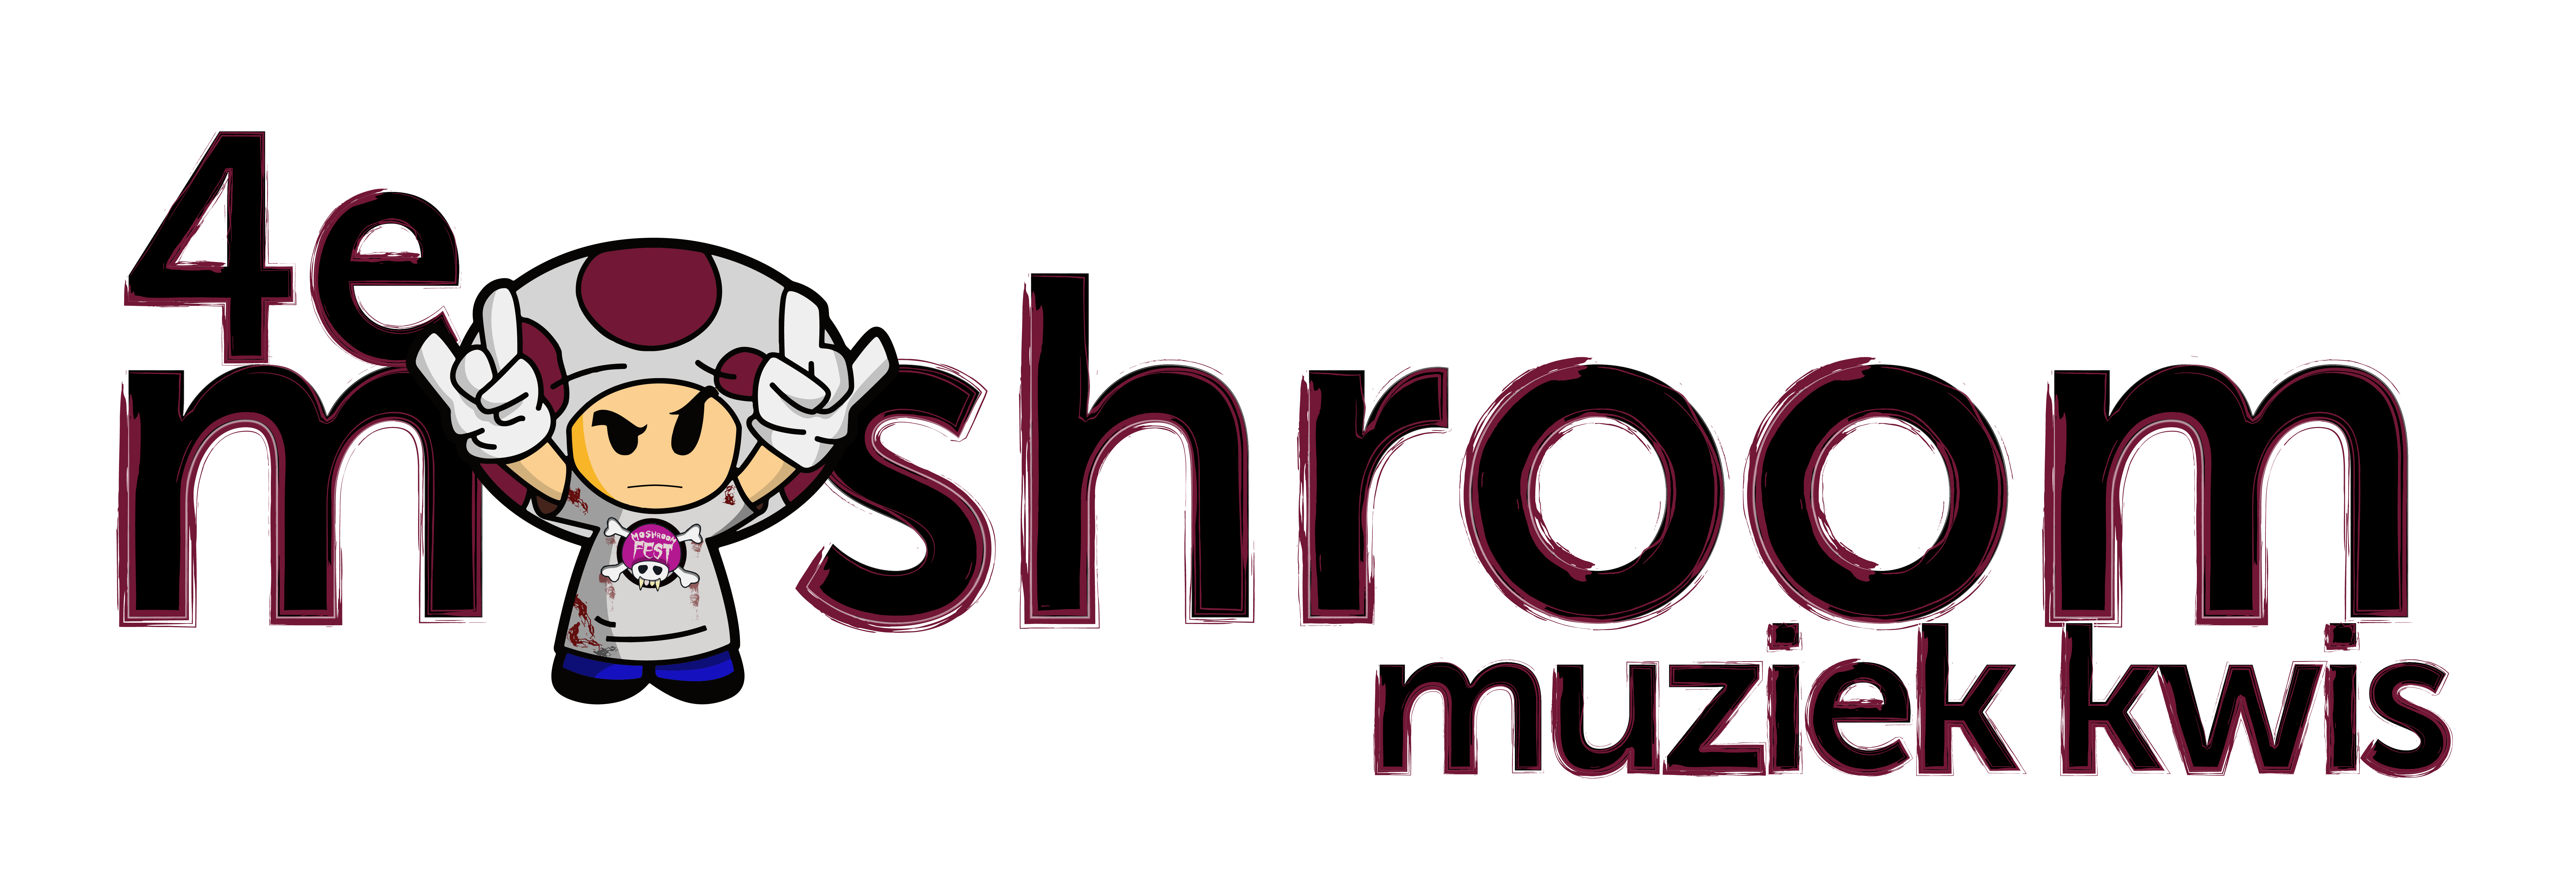 Moshroom Muziek Kwis